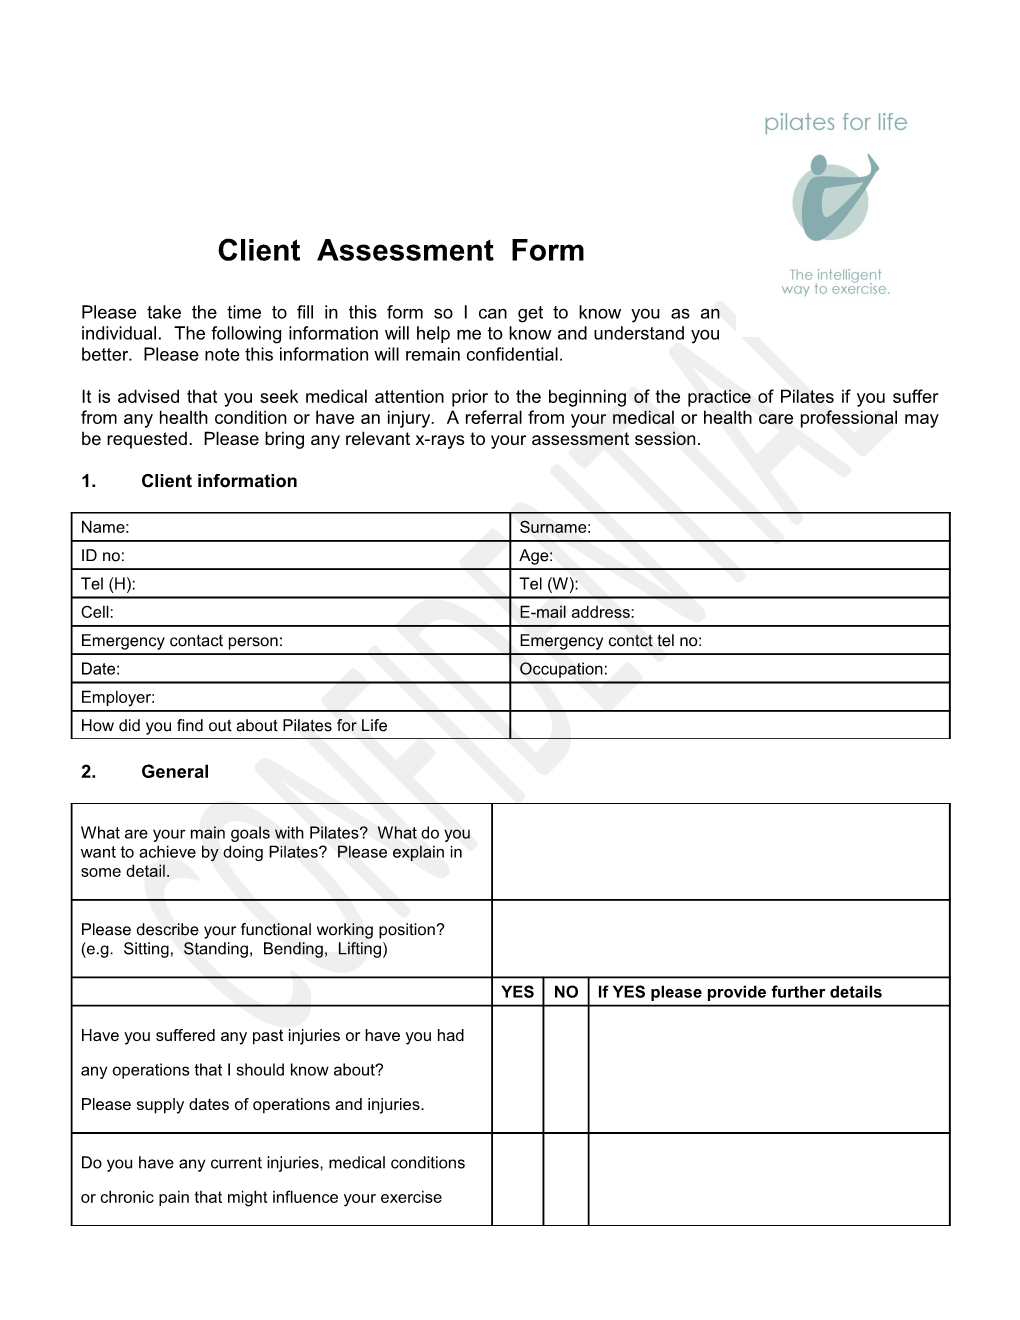 Client Assessment Form s1